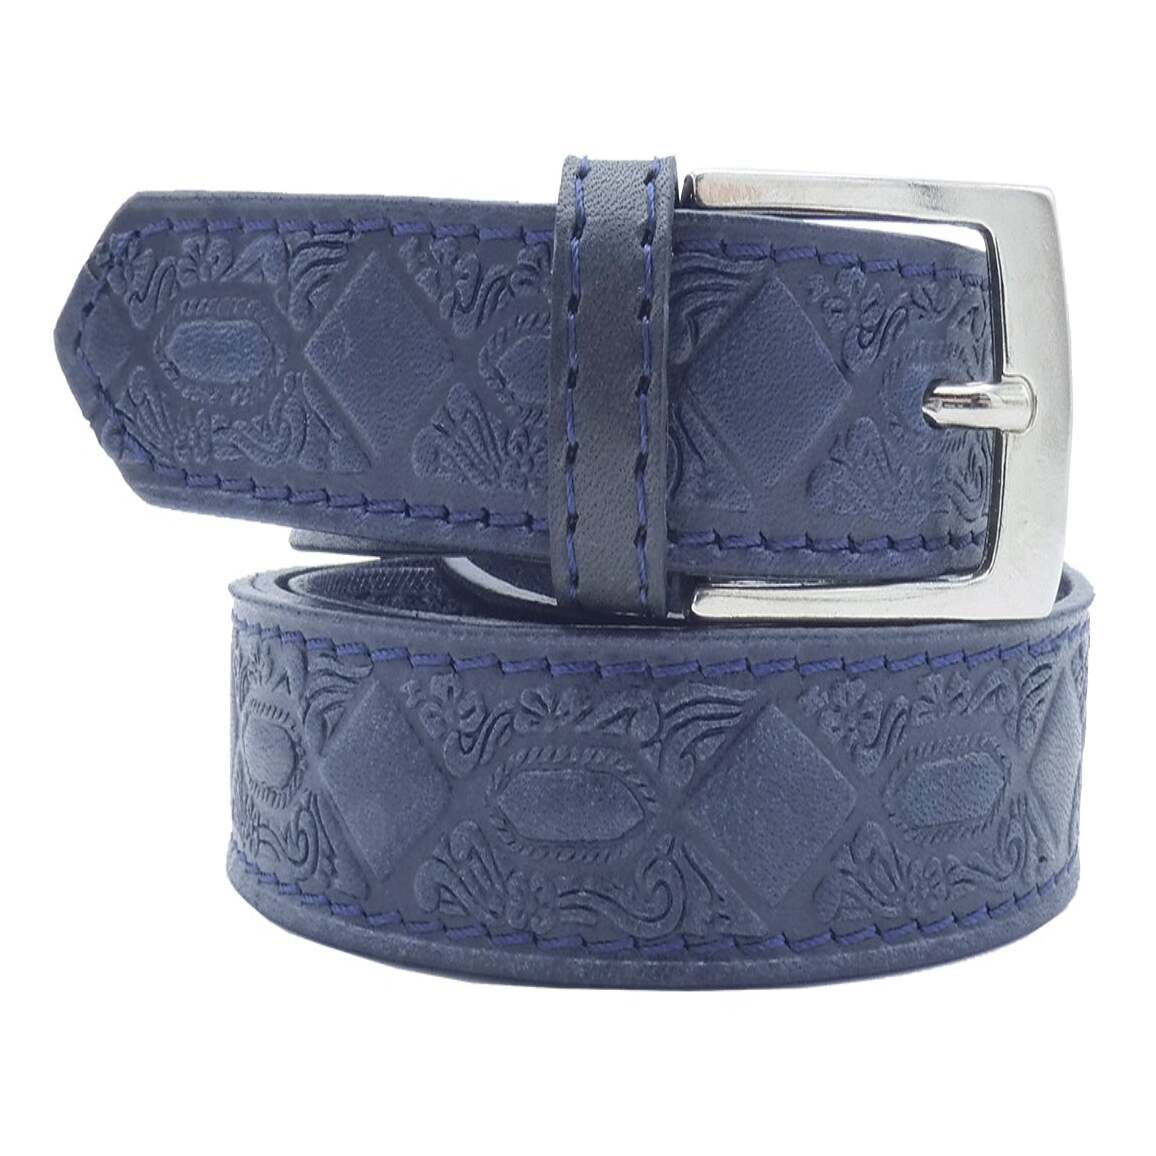 De Chirico Women's Belt in Hand Printed Leather with Satin Nickel Zamak Buckle